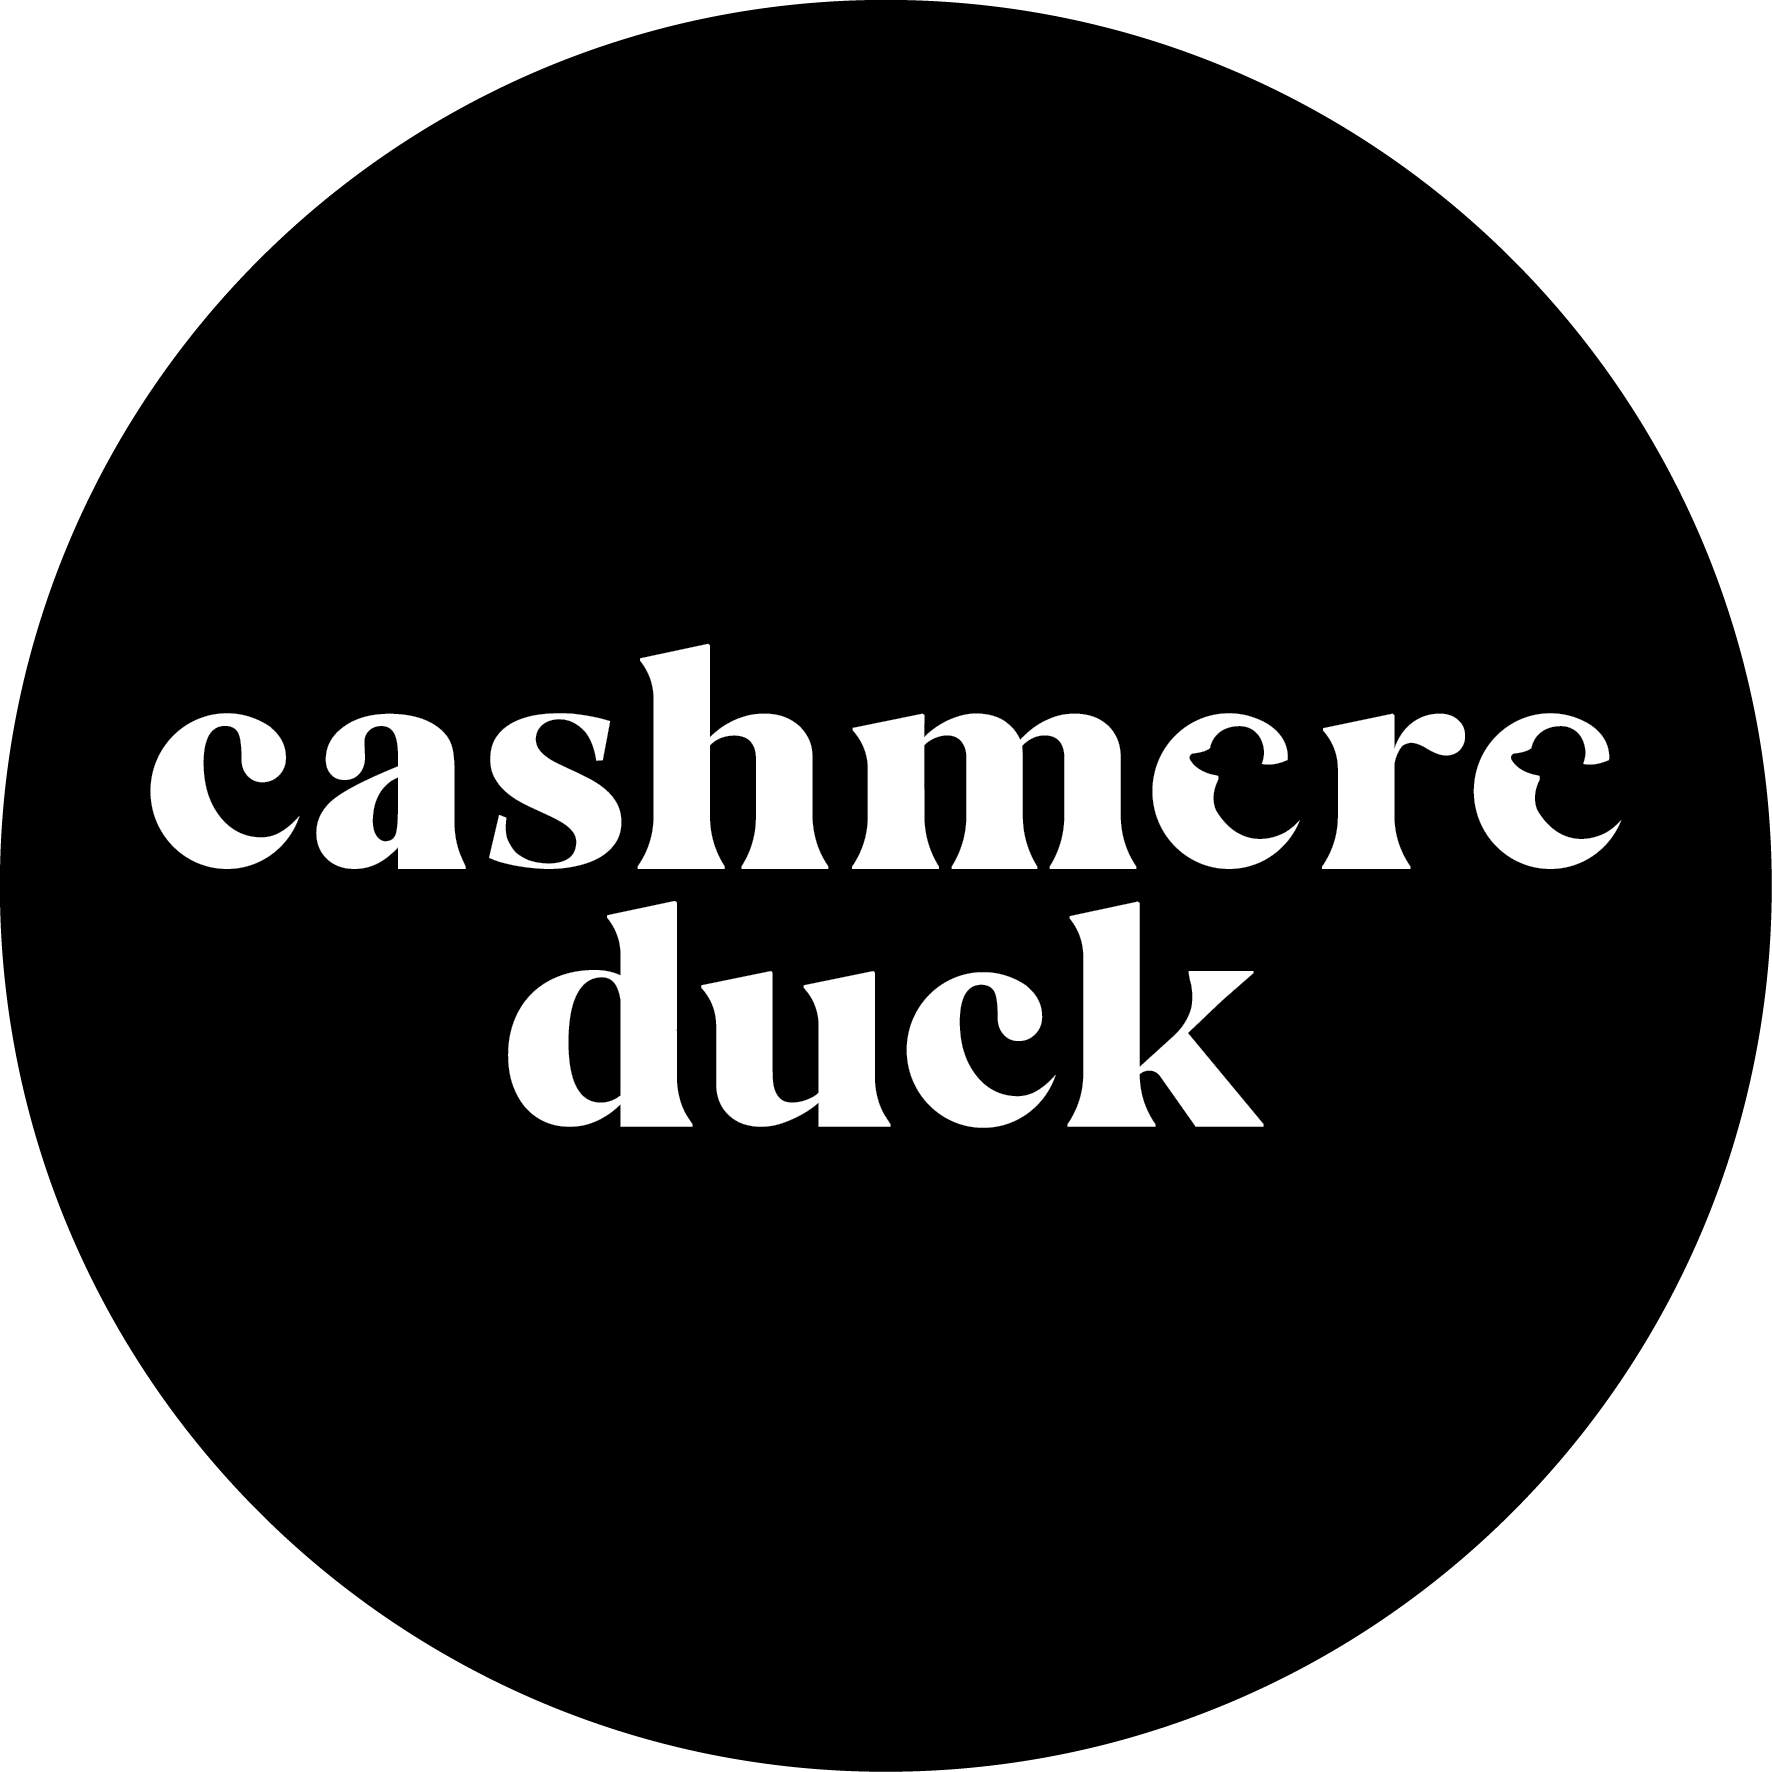 Cashmere Duck